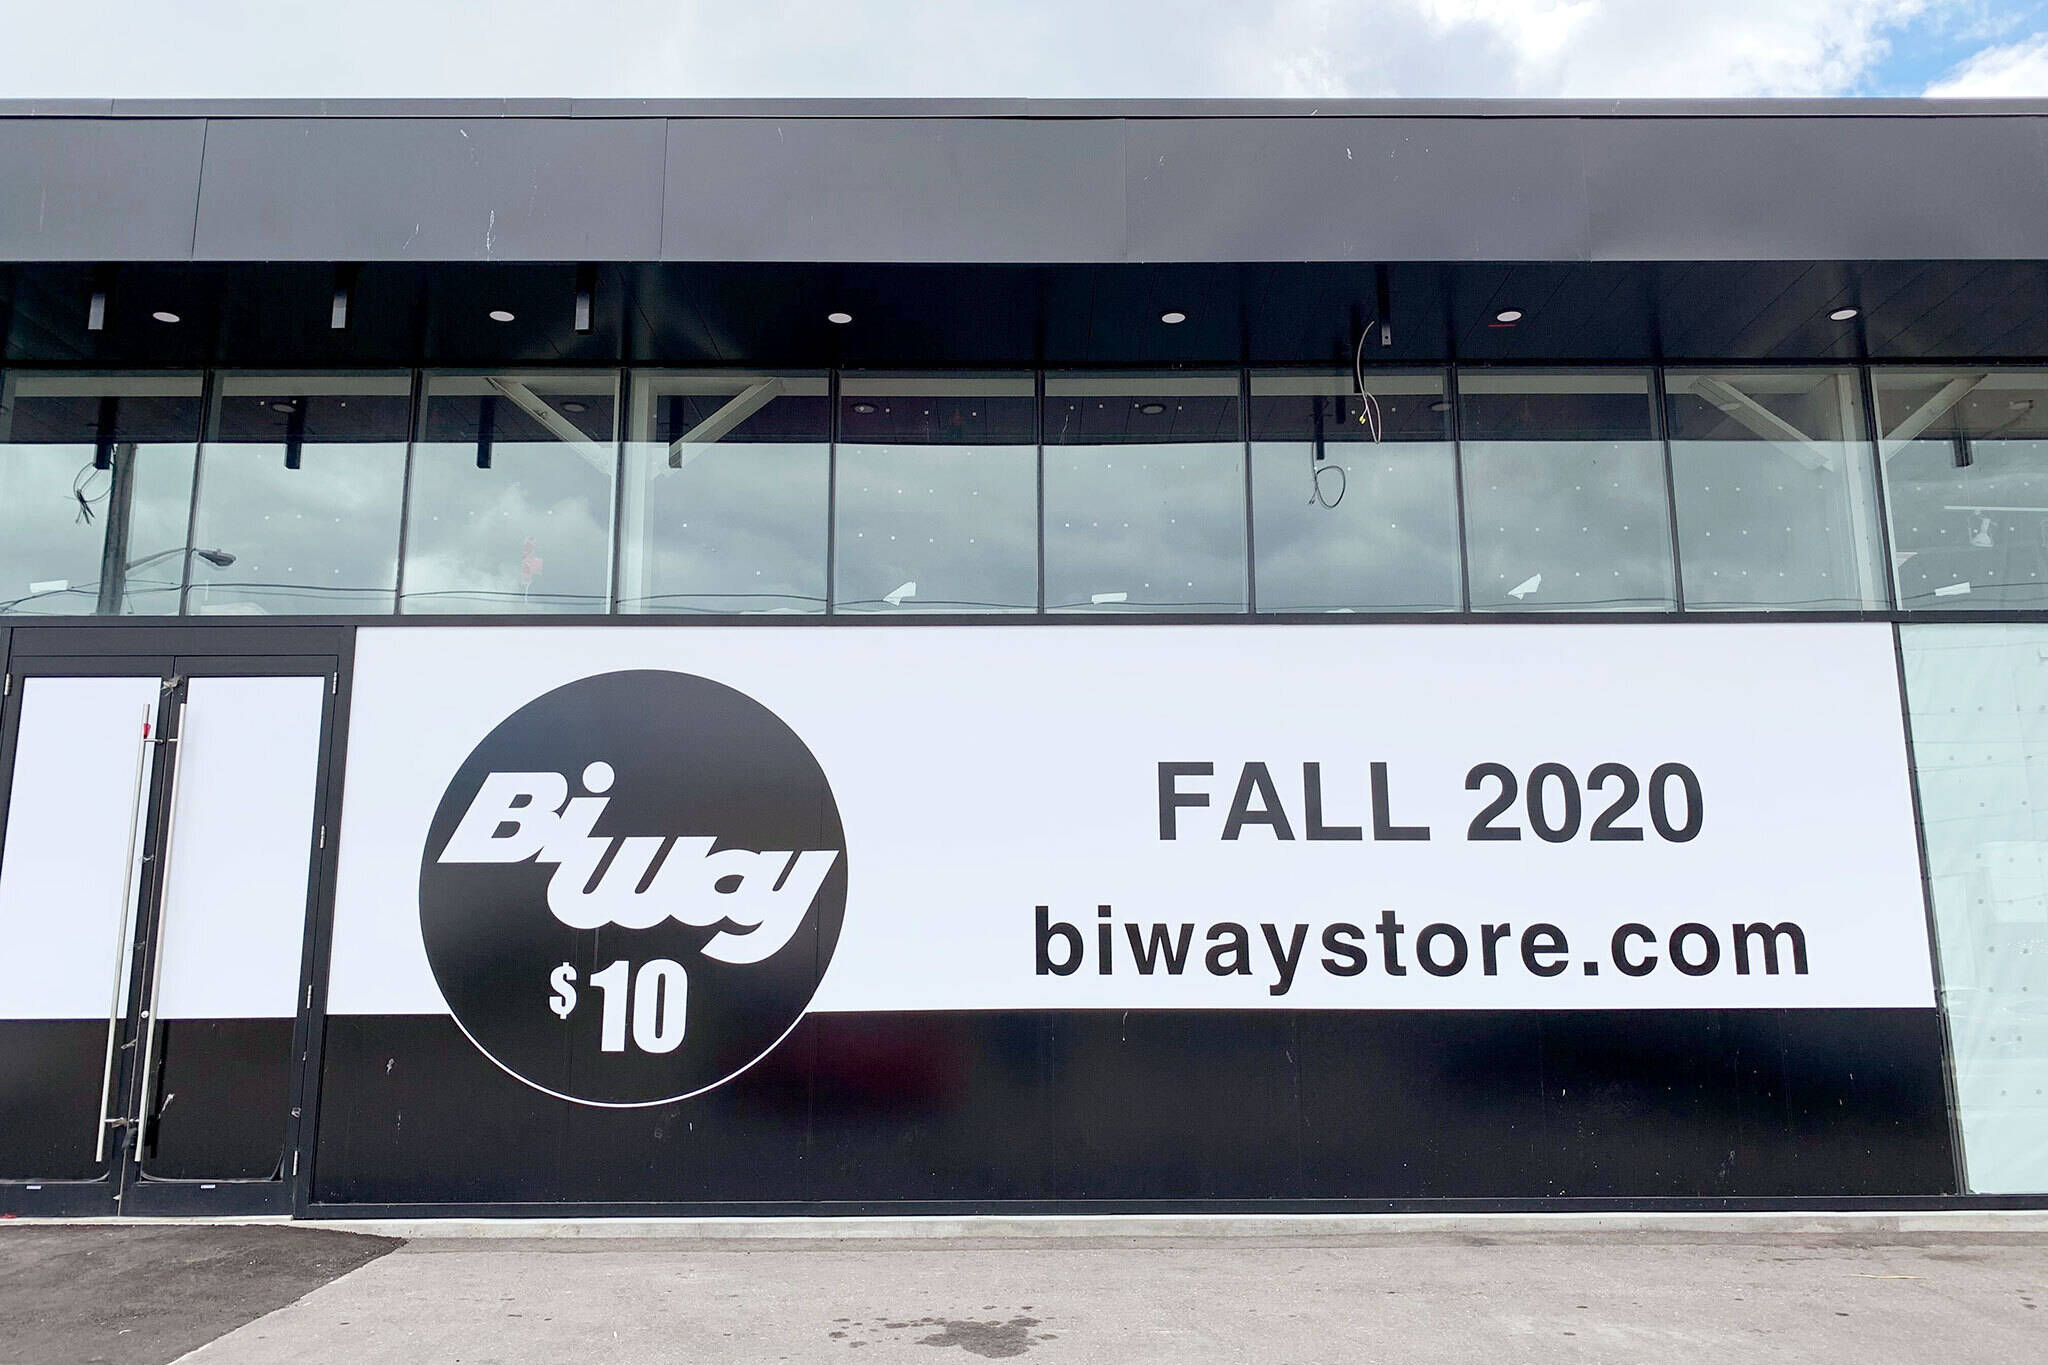 biway store reopening